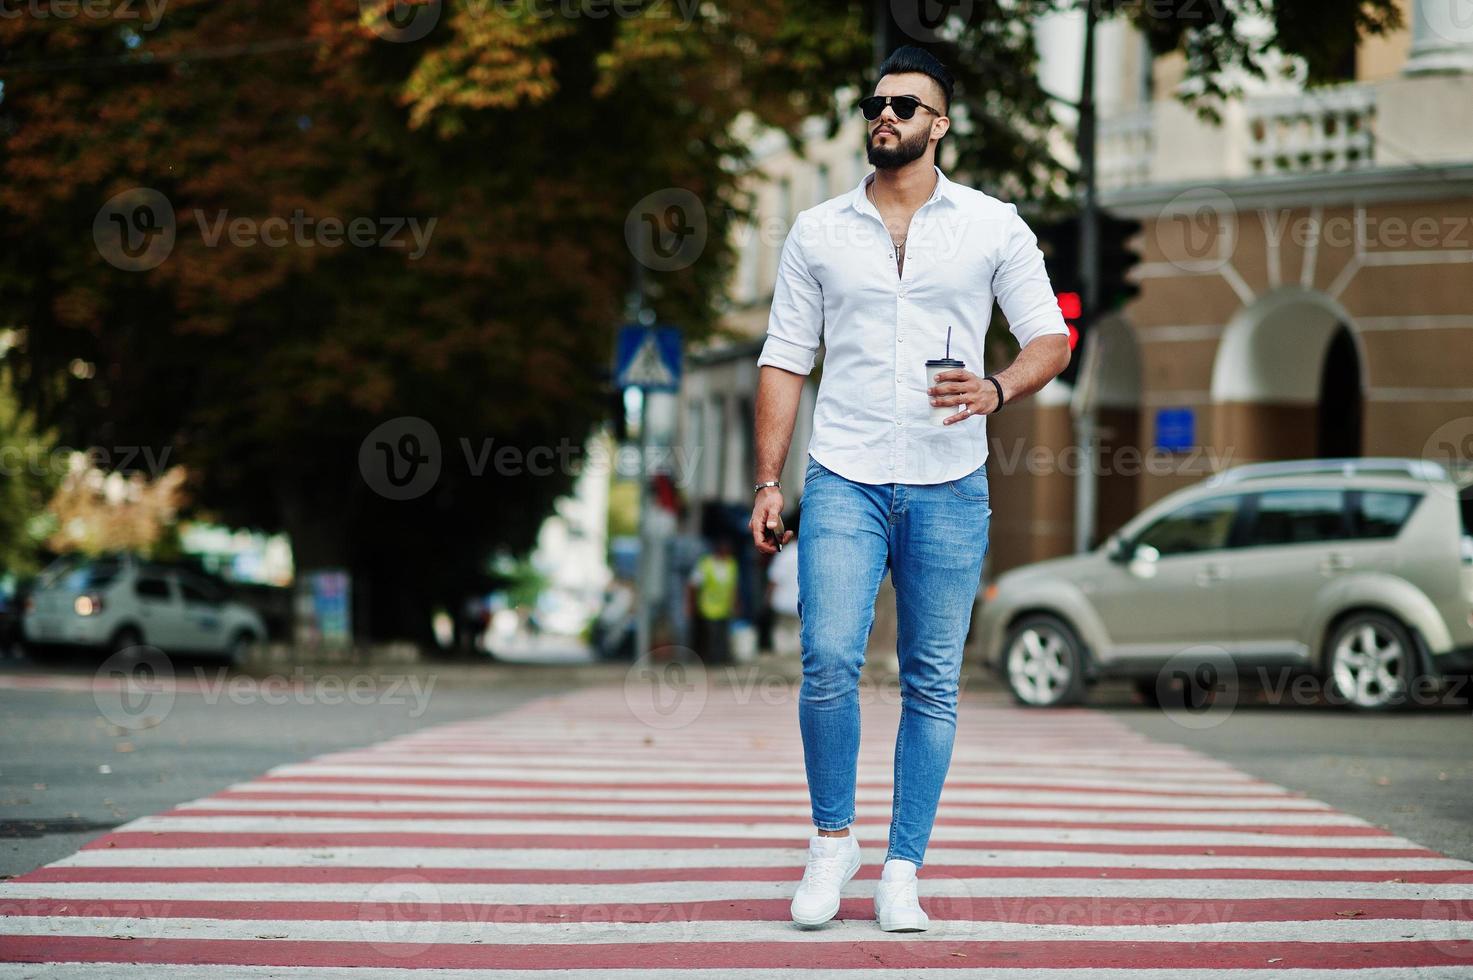 grand modèle d'homme arabe élégant en chemise blanche, jeans et lunettes de soleil posés dans la rue de la ville. barbe arabe attrayant avec une tasse de café marchant sur un passage pour piétons ou un passage pour piétons. photo